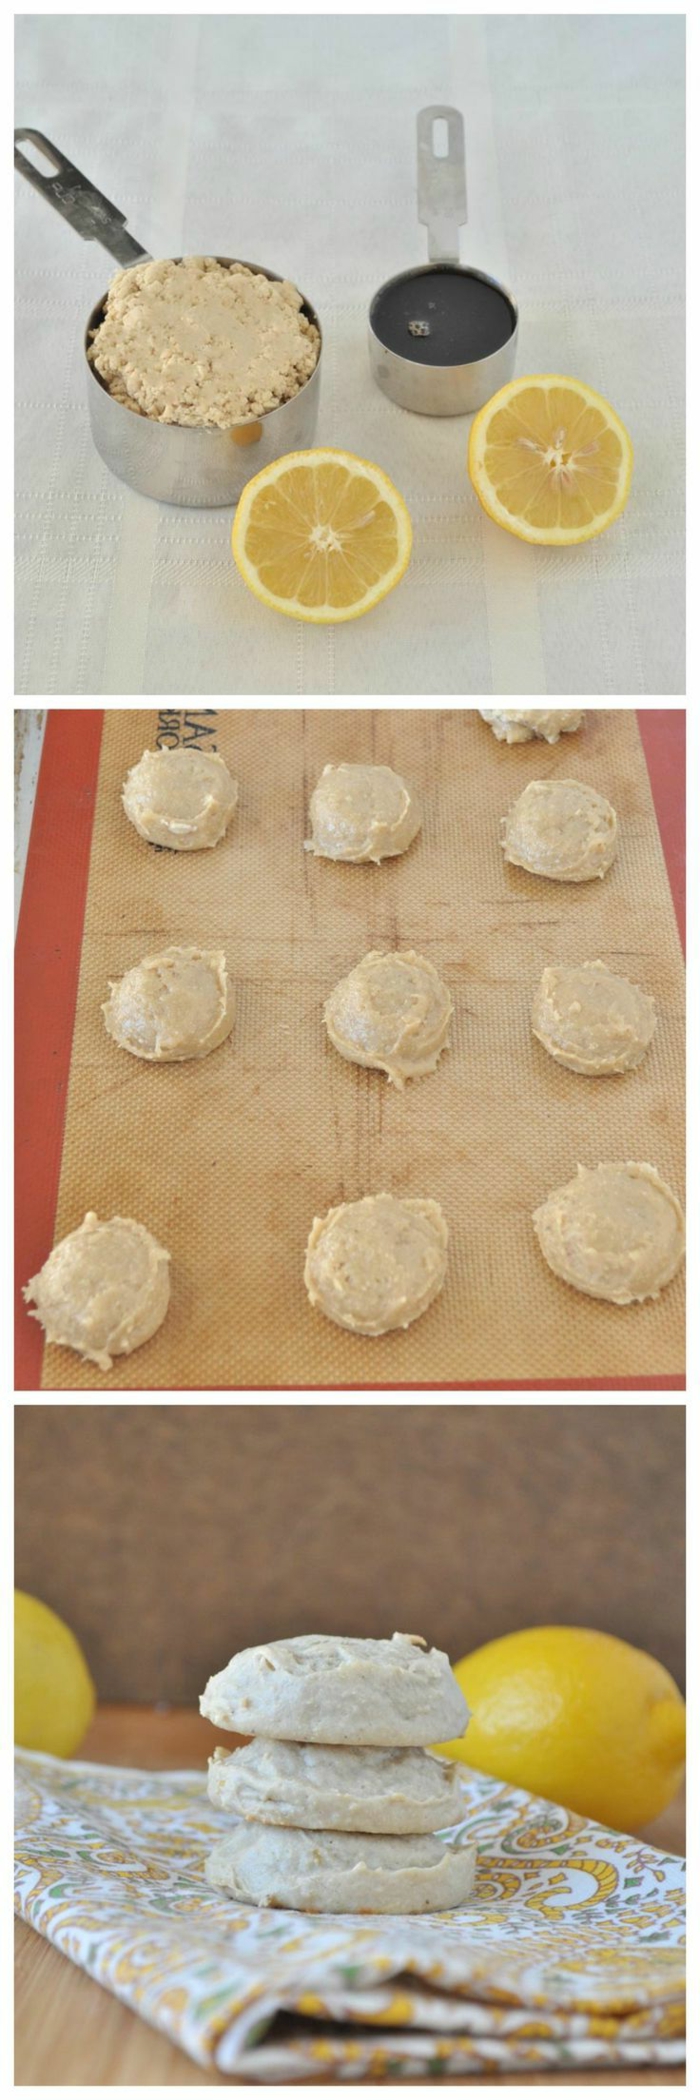 Zitronen-Cookies-ohne-Mehl-Zubereitung-leichtes-Rezept-gesunde-süßigkeiten-ohne-zucker-glutenfrei